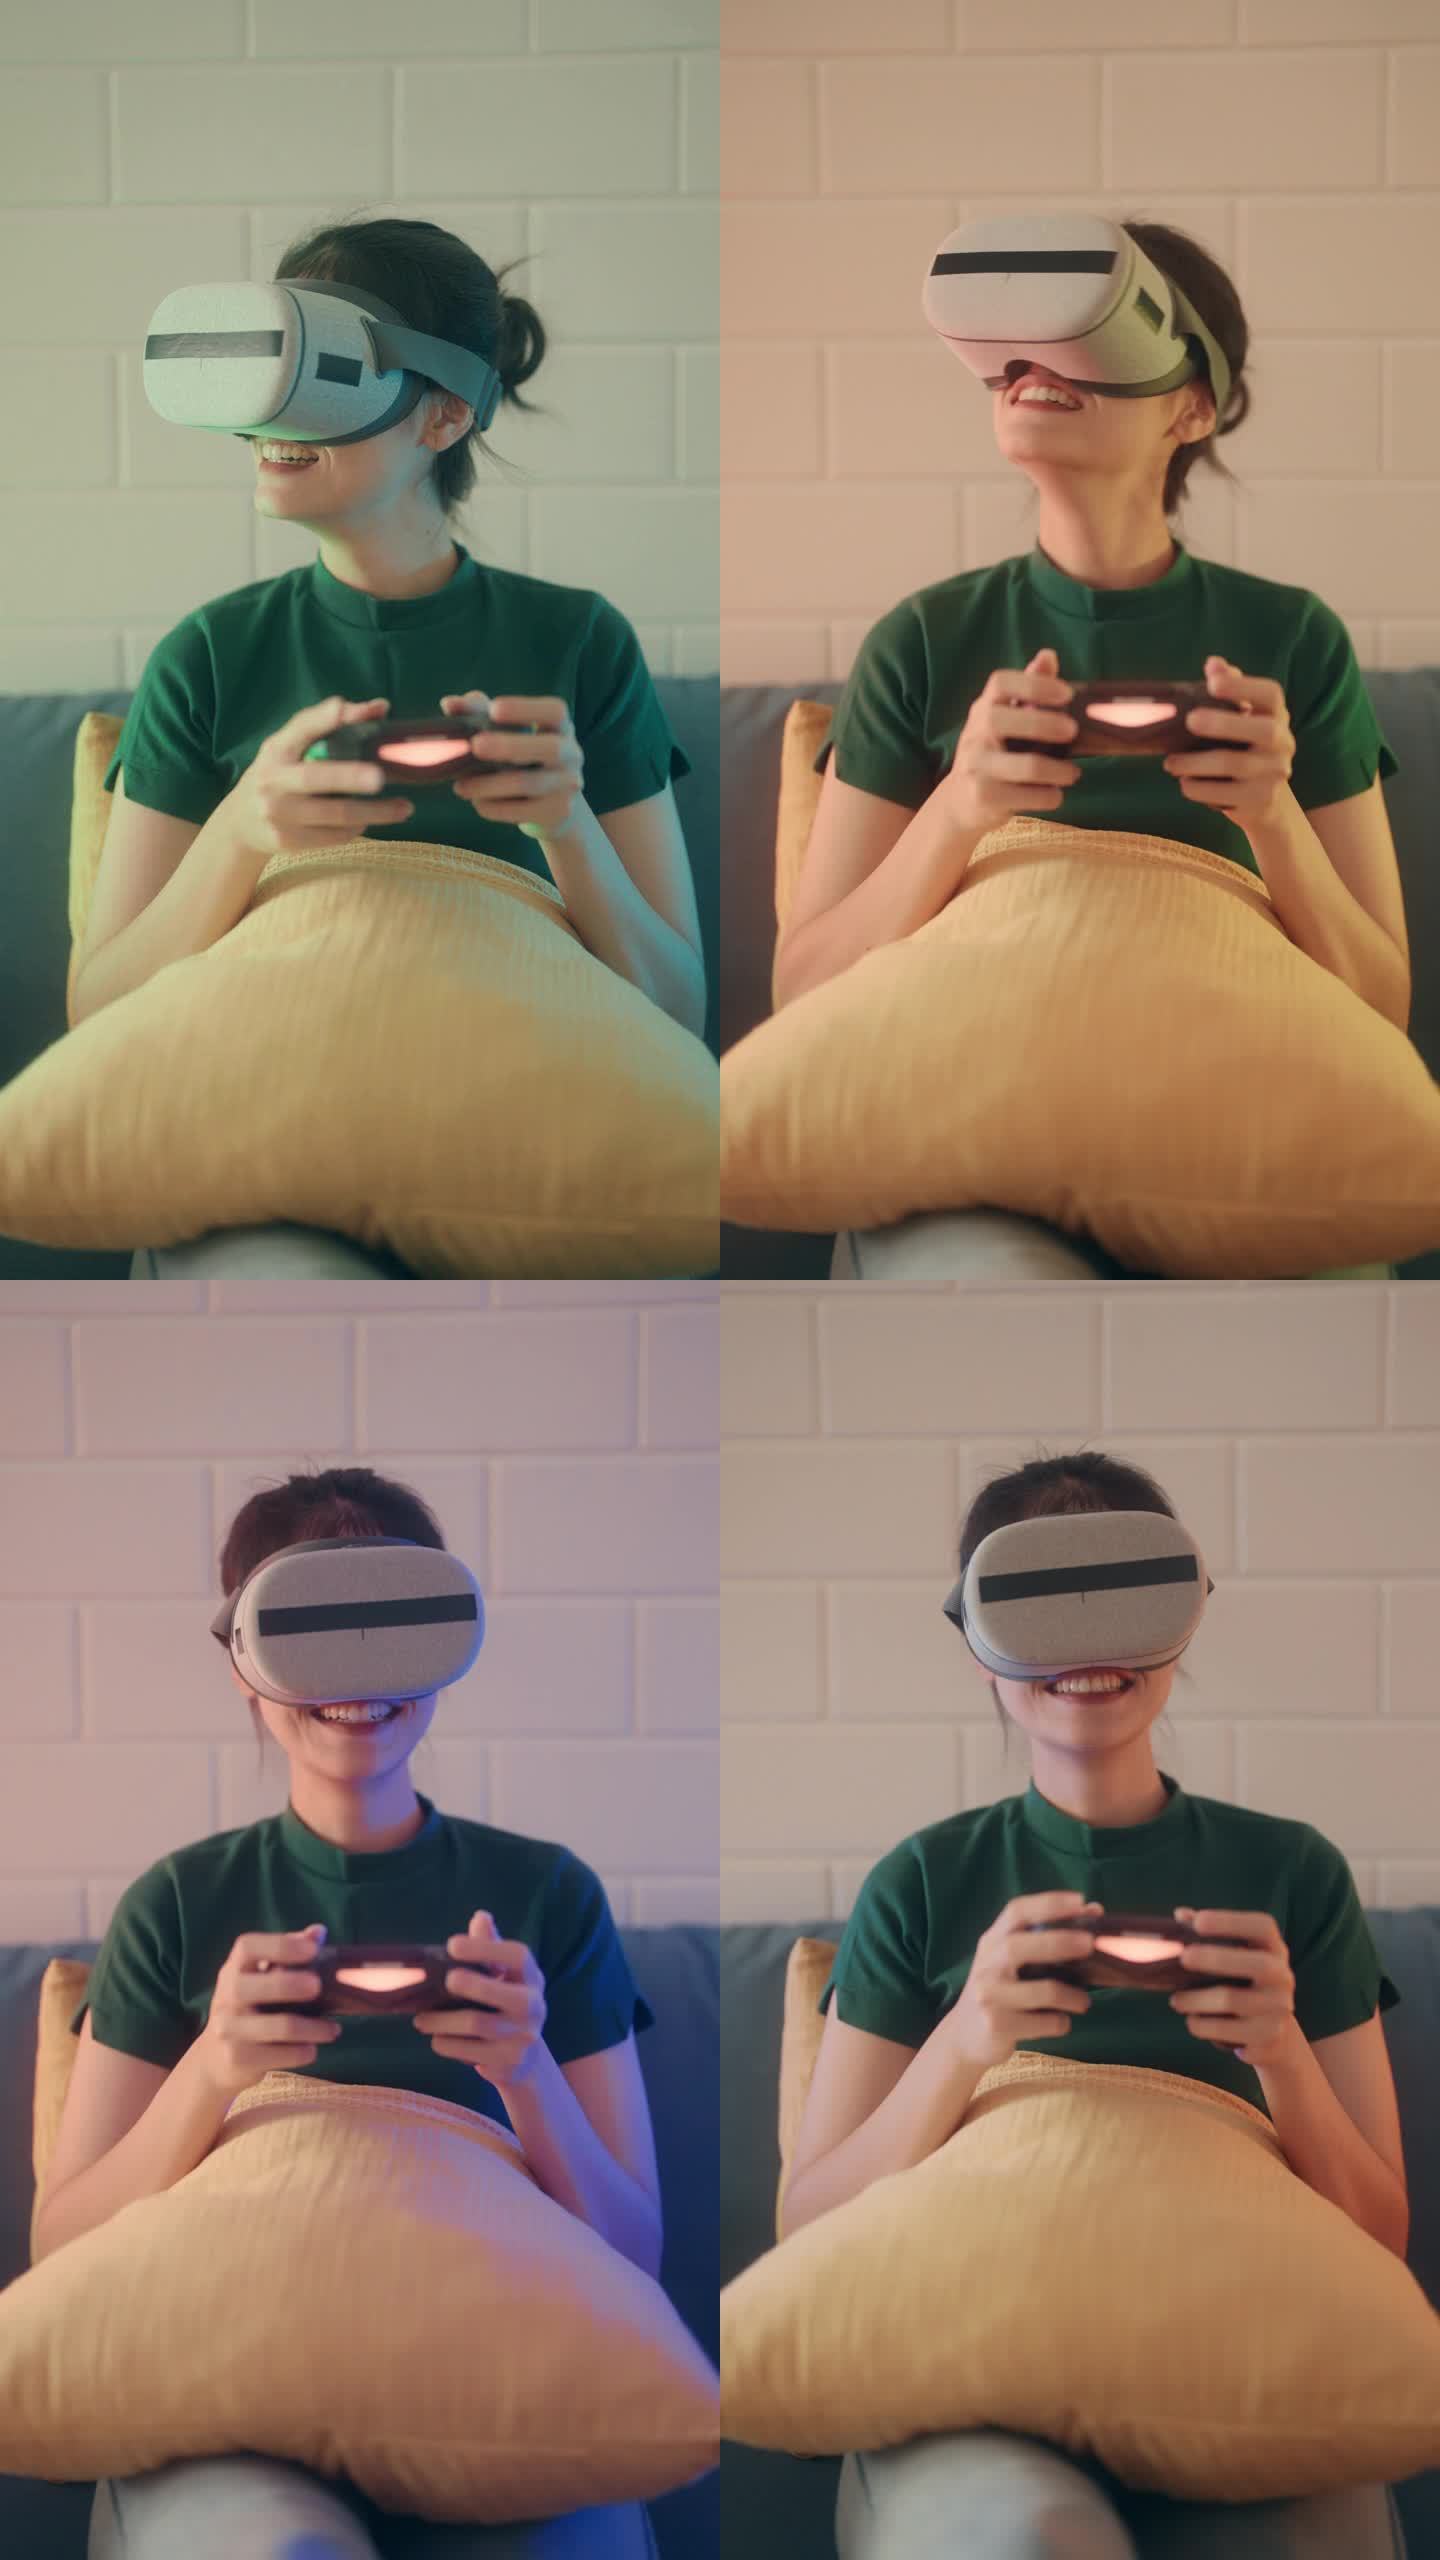 沉浸式游戏体验:美女在时尚客厅享受VR 360视频游戏。